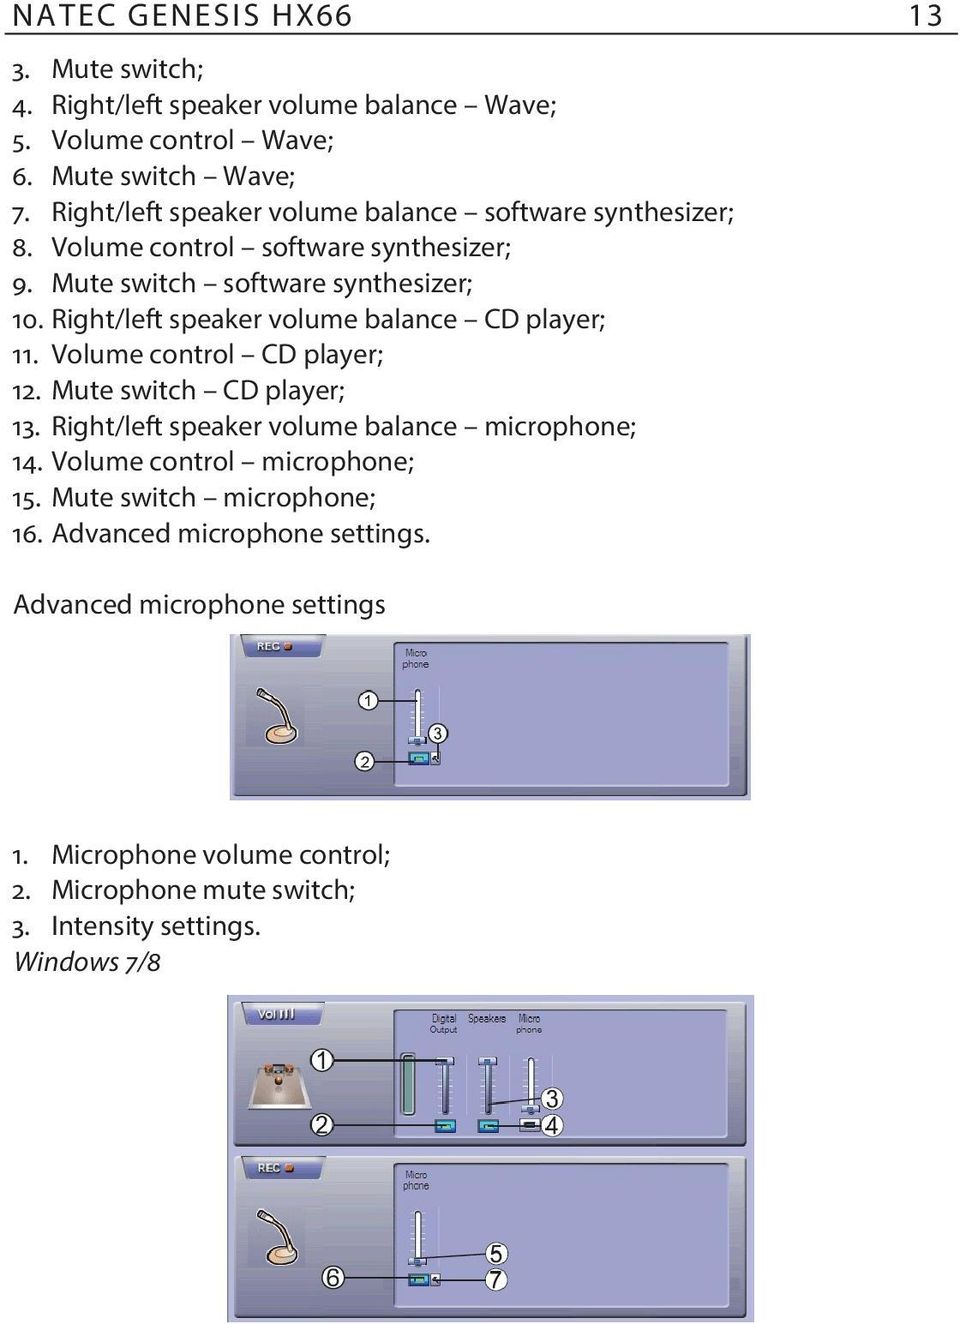 Right/left speaker volume balance CD player; 11. Volume control CD player; 12. Mute switch CD player; 13. Right/left speaker volume balance microphone; 14.